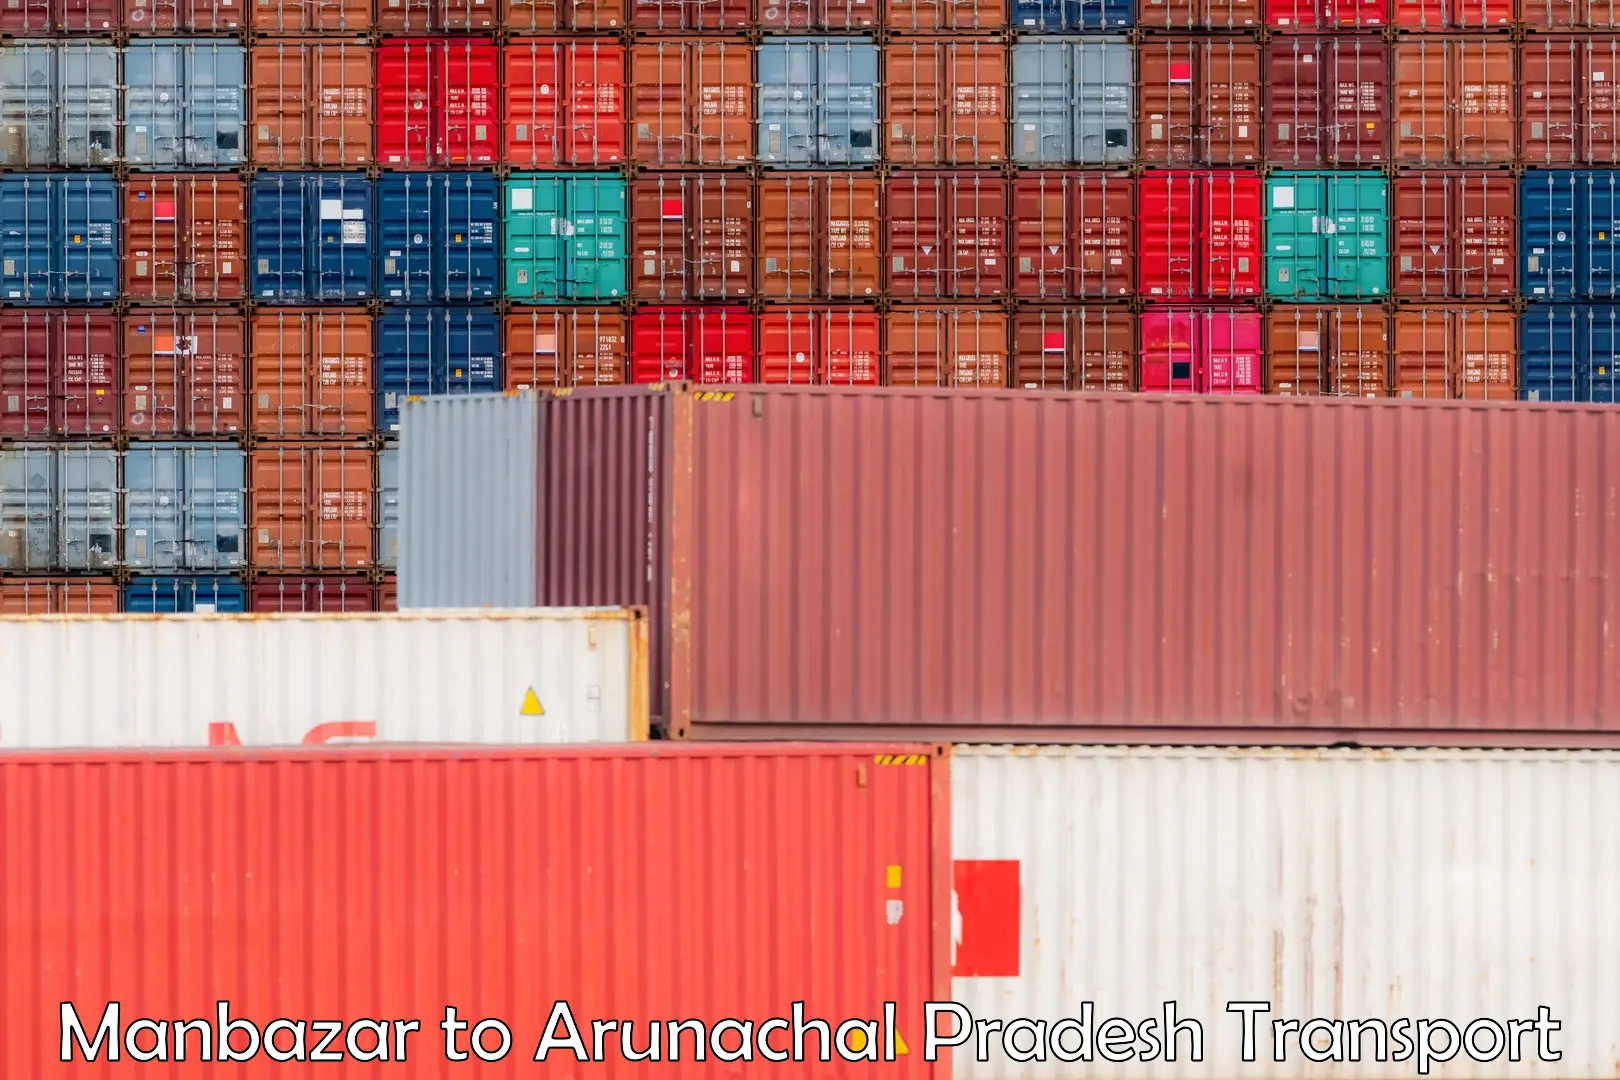 Truck transport companies in India Manbazar to Arunachal Pradesh